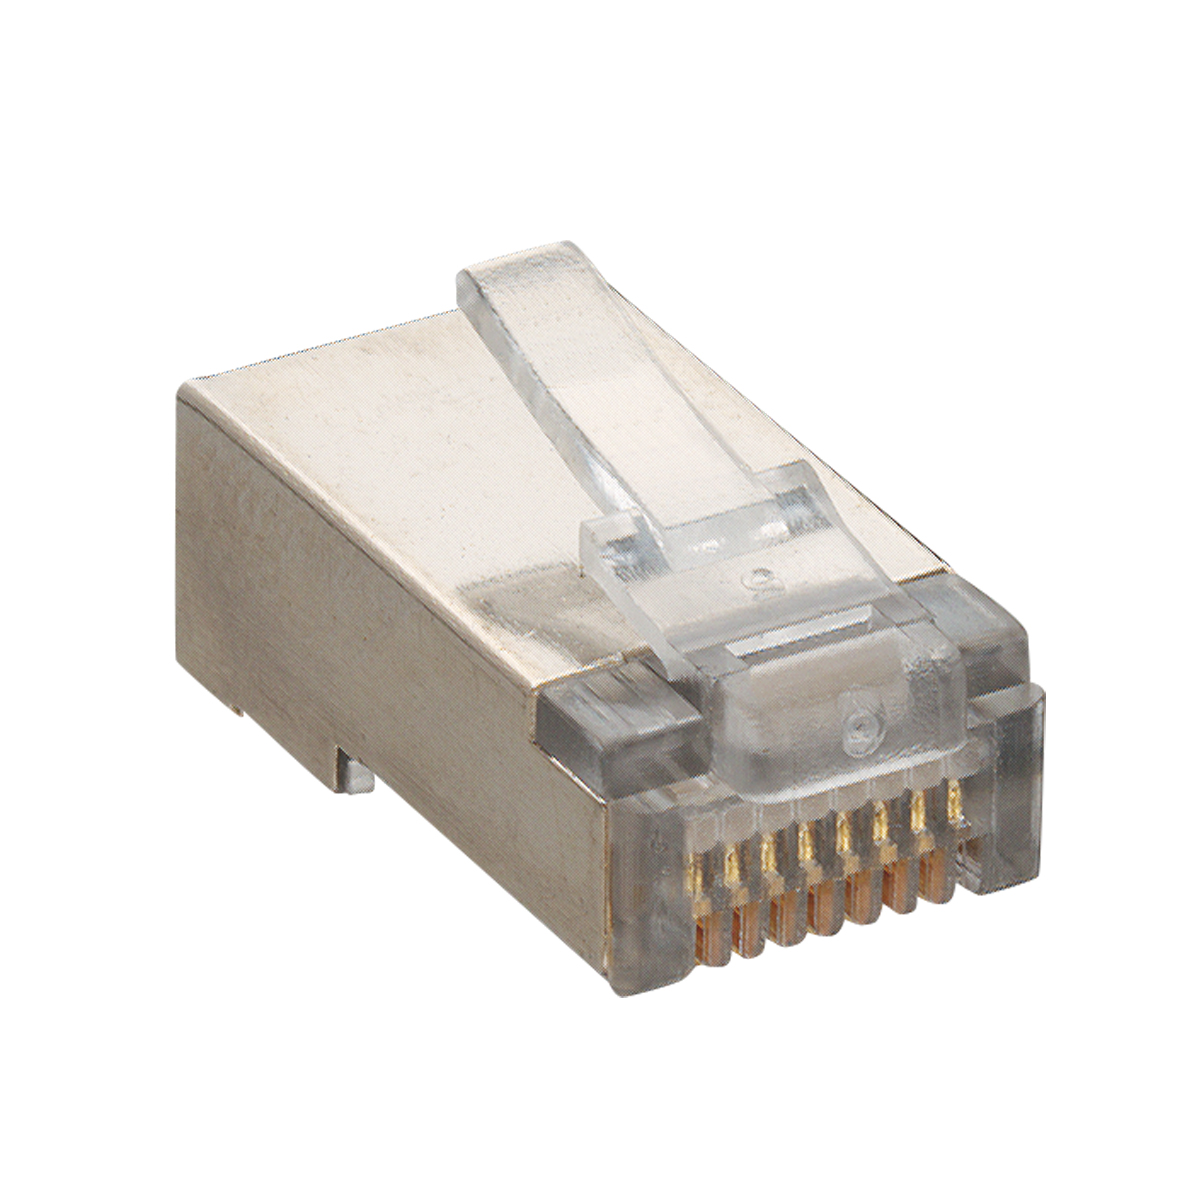 Lumberg: P 129 S (Series 25 | Modular connectors)